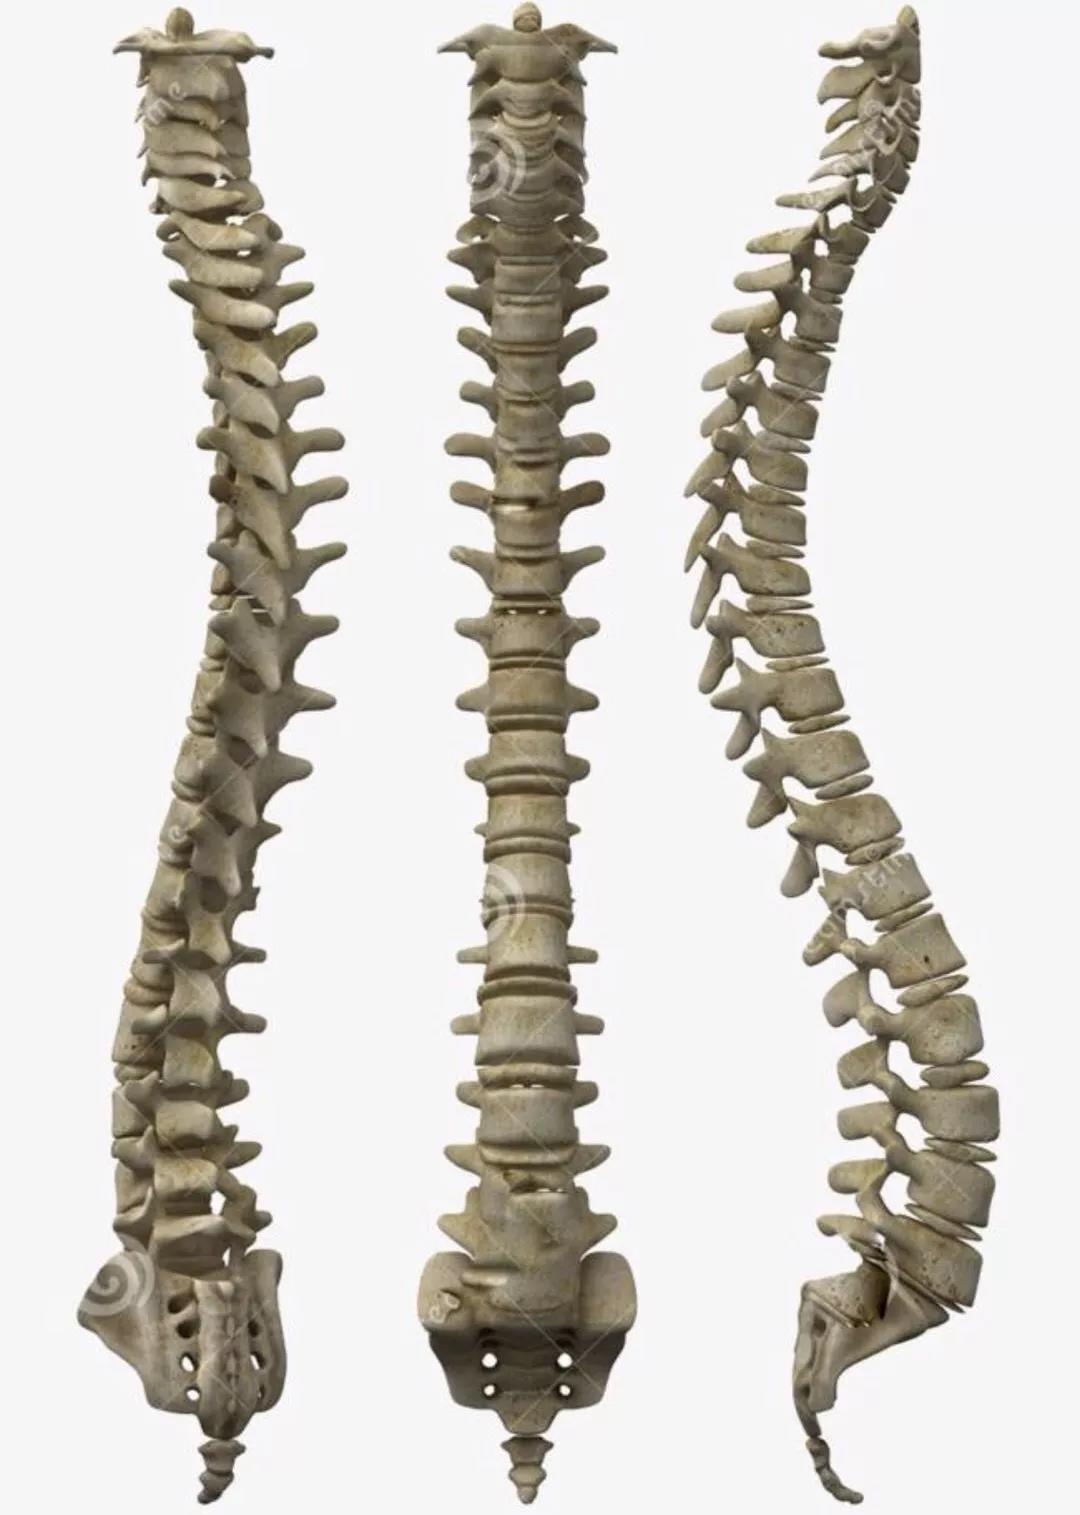 24节气与人体24节脊椎骨中枢神经构成天象人相